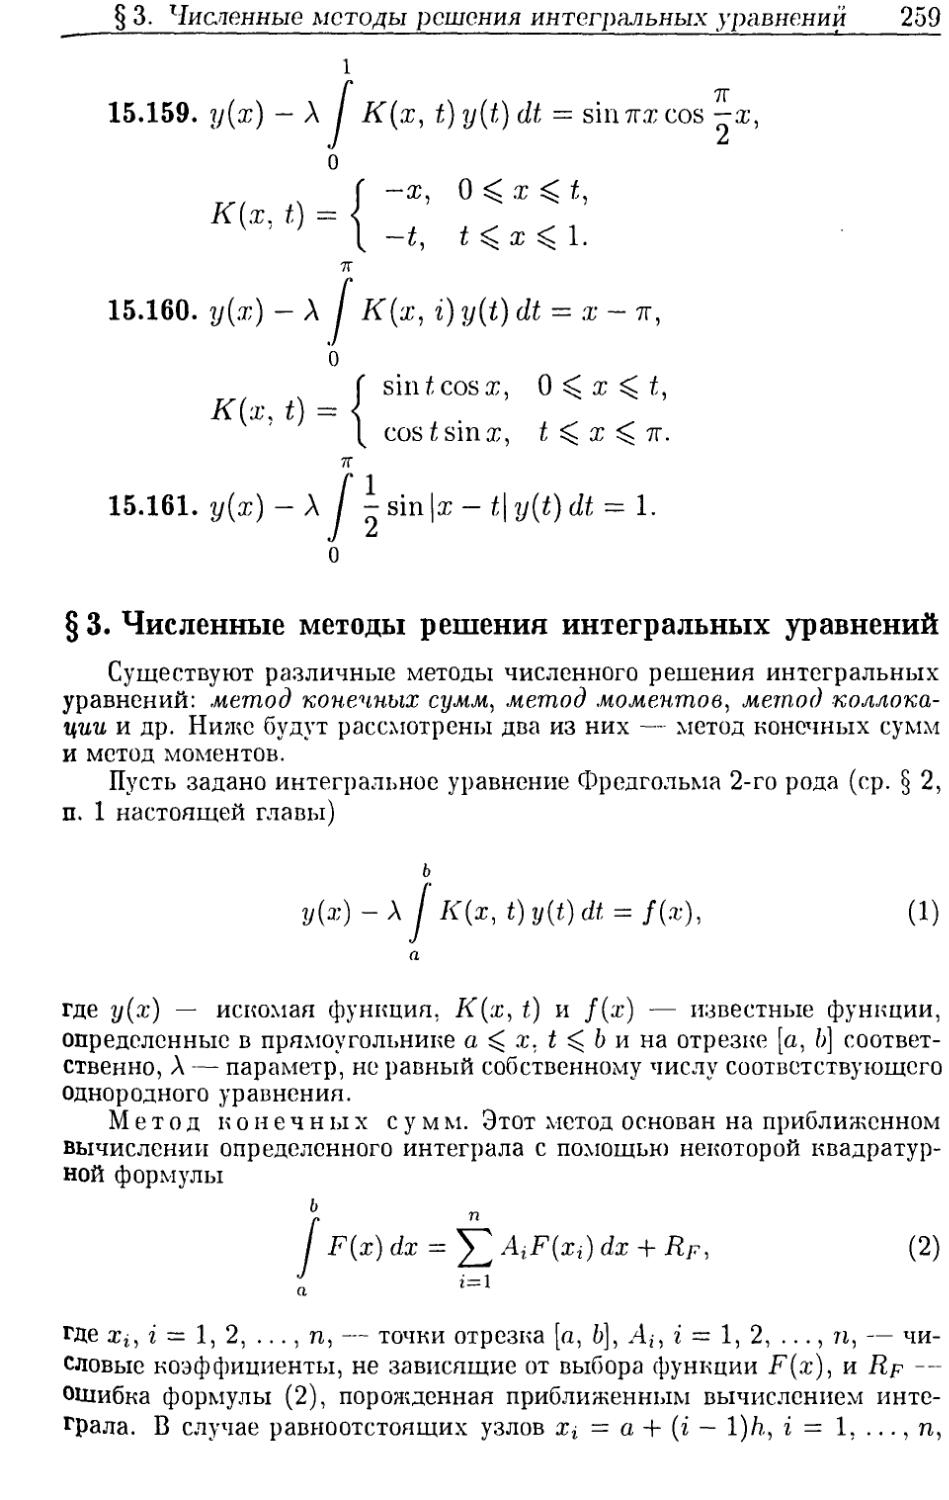 §3. Численные методы решения интегральных уравнений